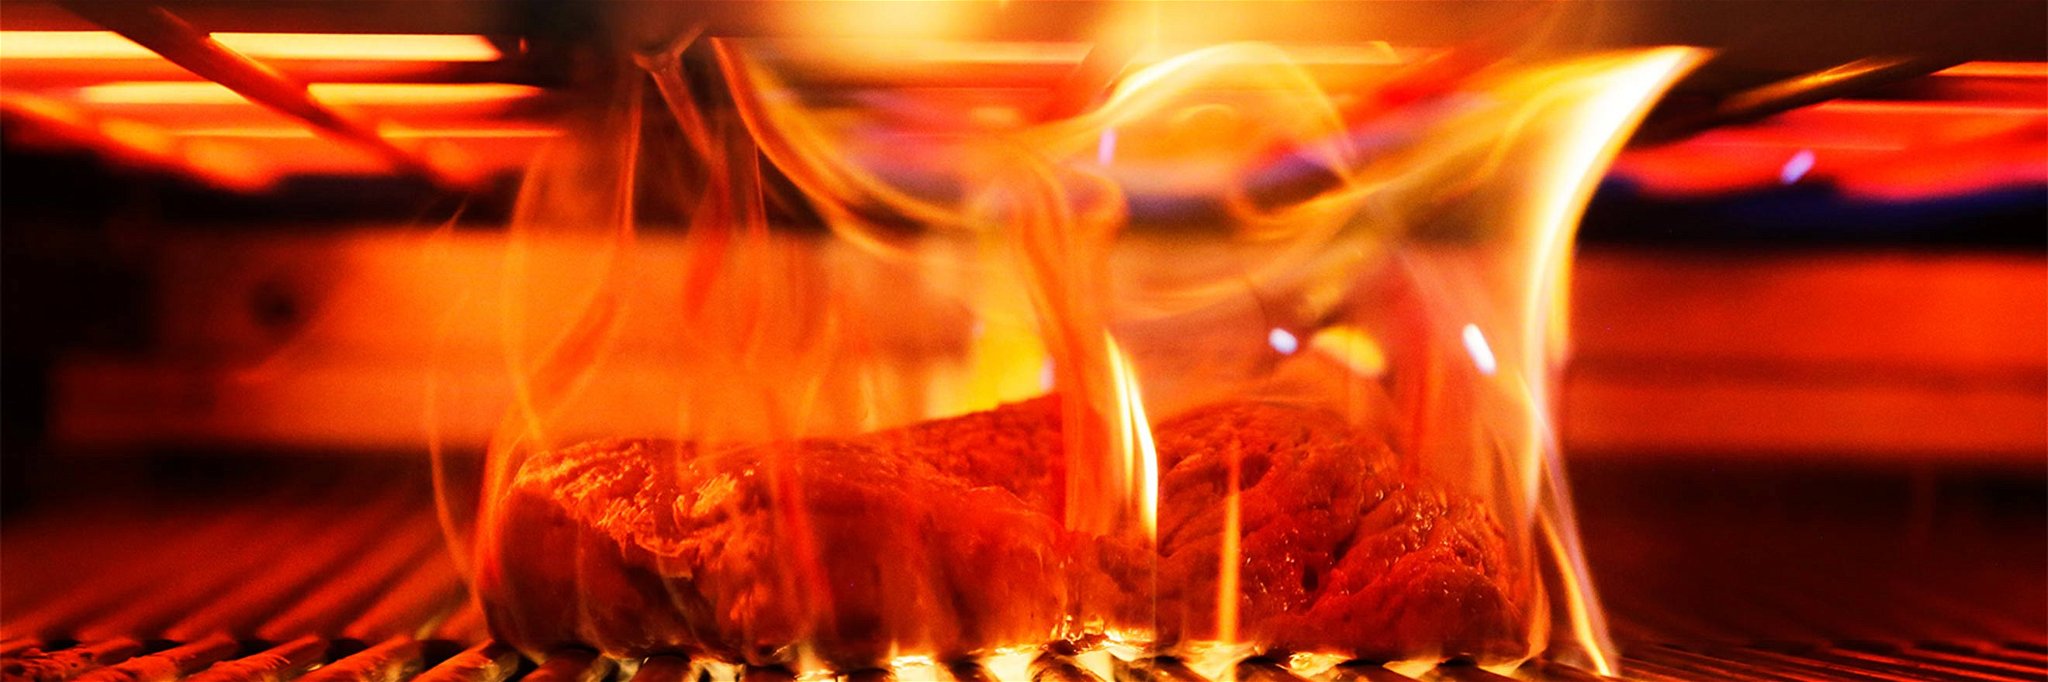 In der Flamme erfährt das Steak seine Vollendung.